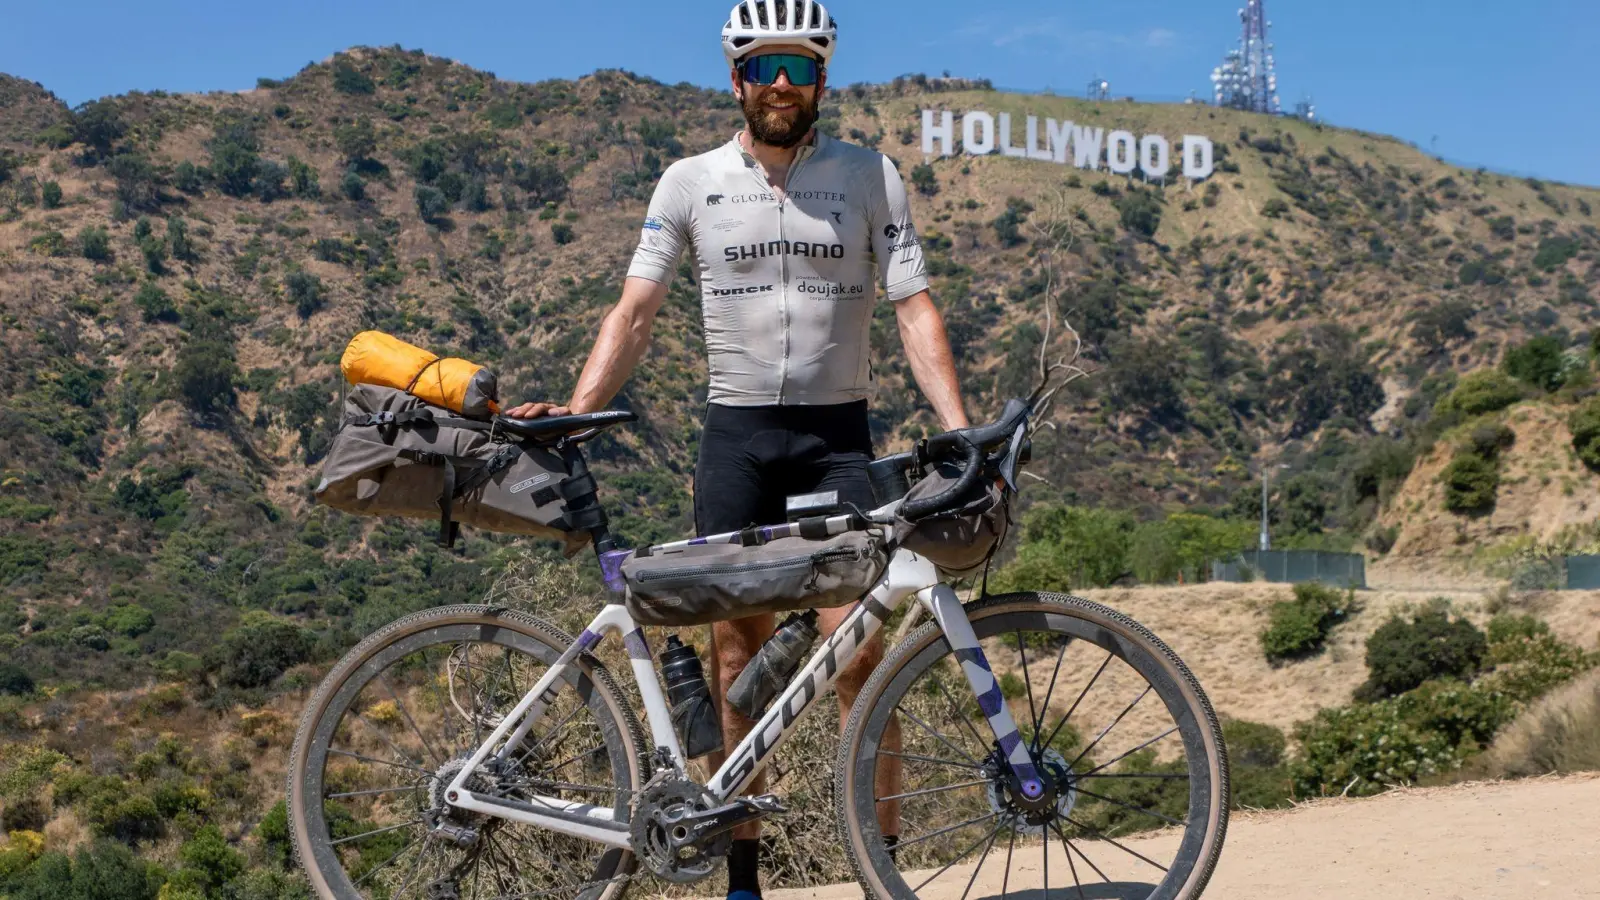 Der deutsche Athlet Jonas Deichmann mit seinem Fahrrad vor der Kulisse der Hollywood Hills in den USA. (Foto: Markus Weinberg/Jonas Deichmann/dpa)